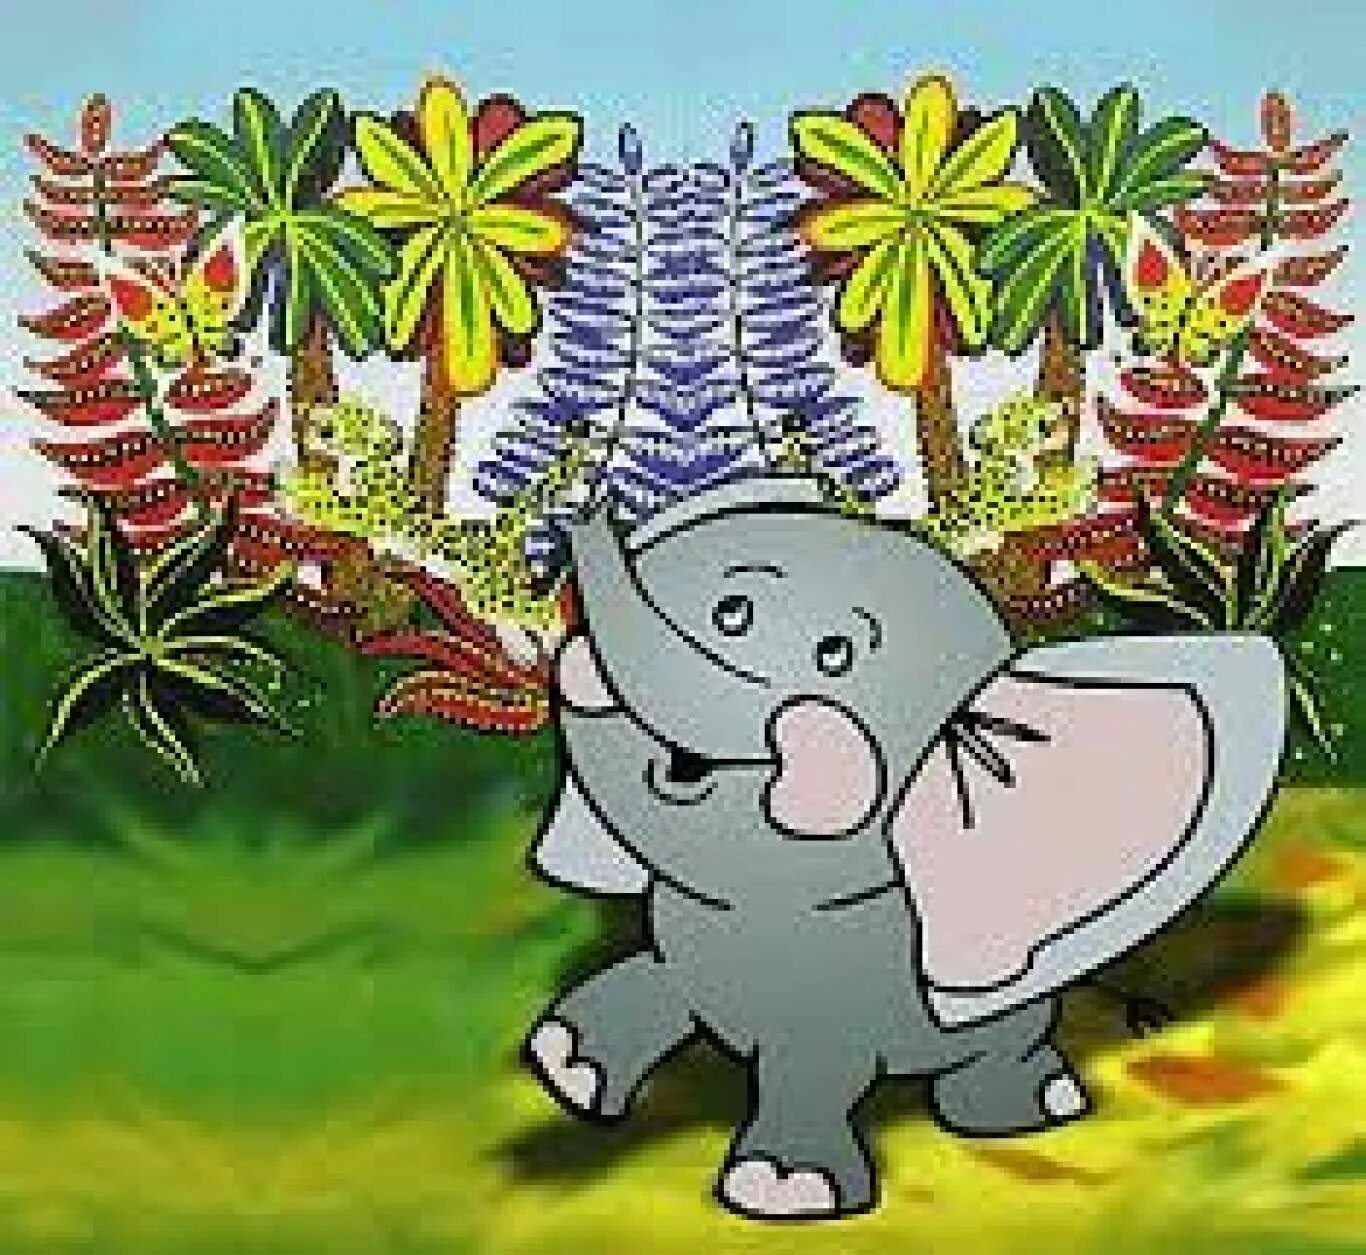 Слоник сказка. Киплинг Слоненок. Киплинг Редьярд "слонёнок". Непослушный Слоненок. Киплинг Слоненок иллюстрации.